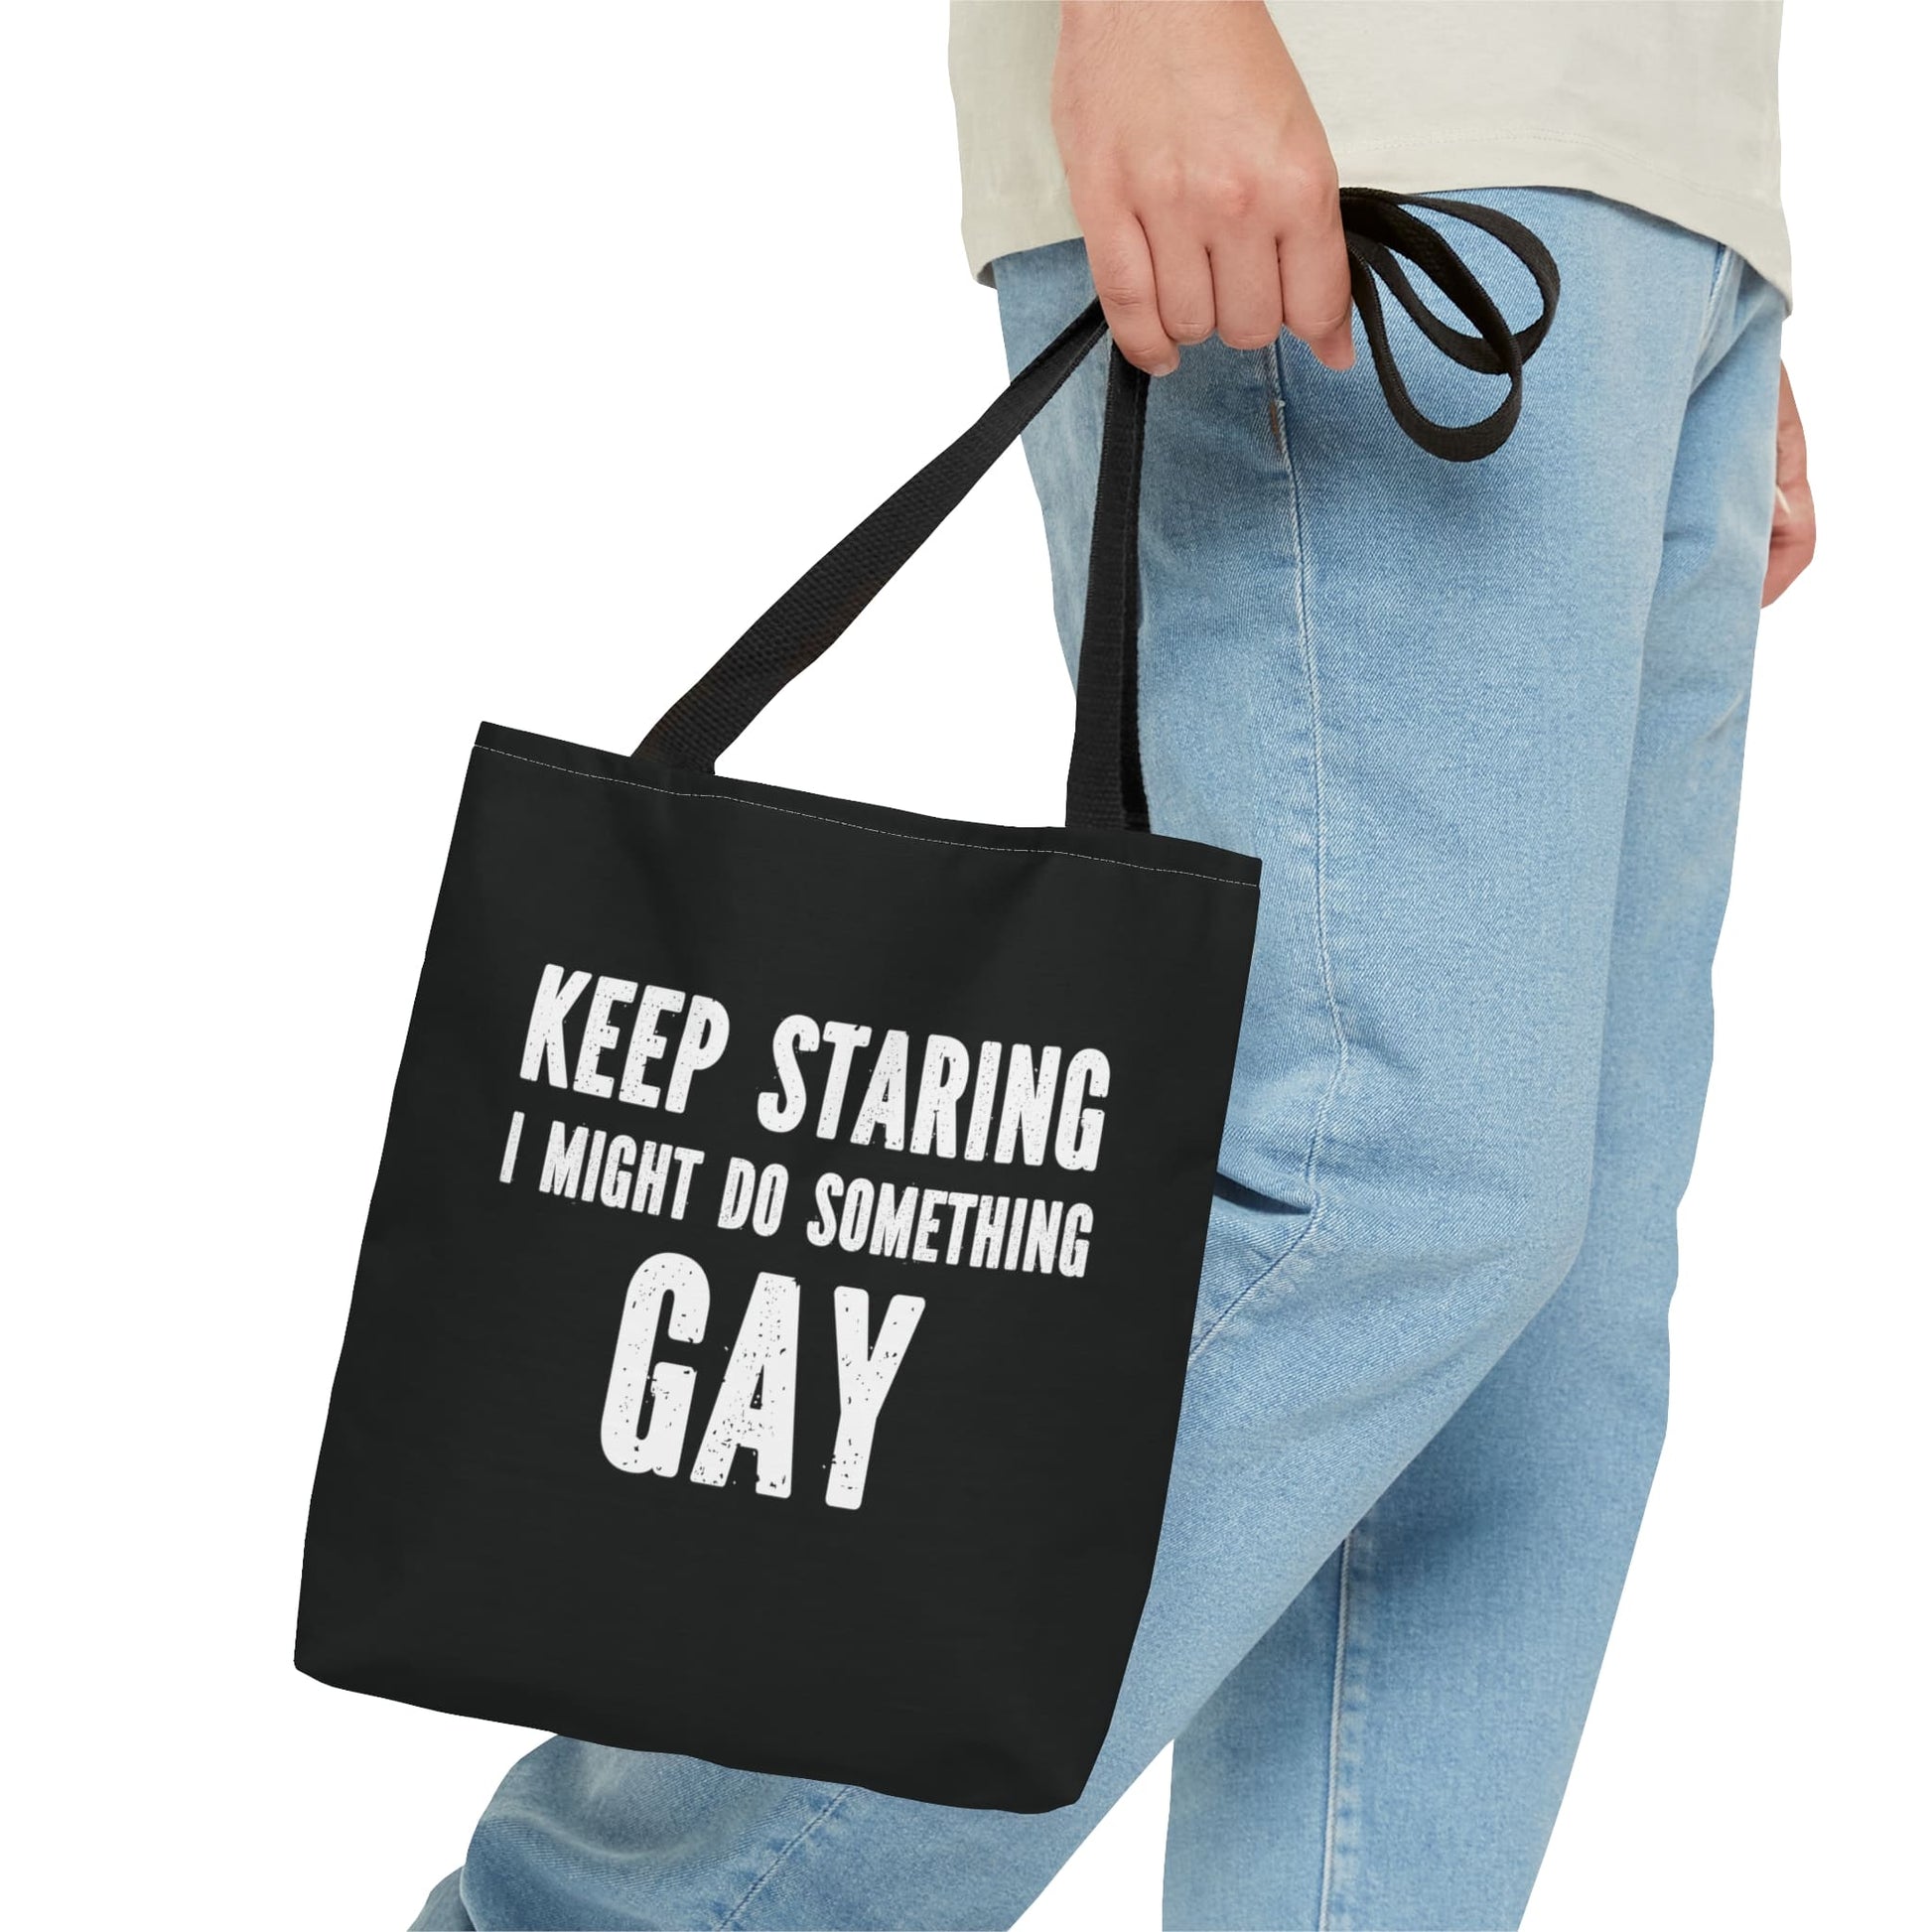 funny gay tote bag, small